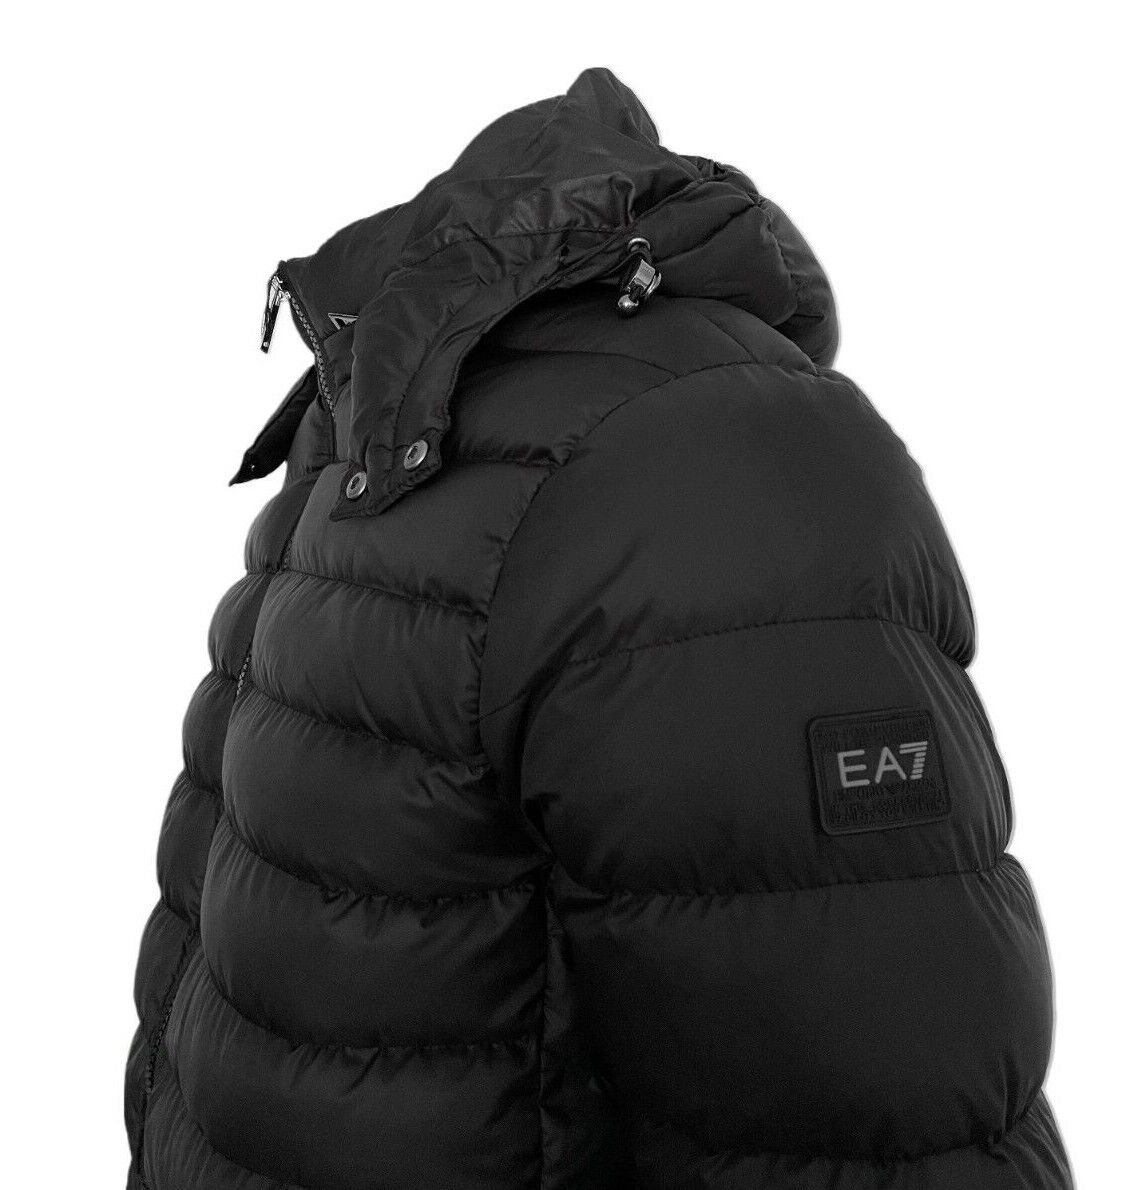 Emporio Armani EA7 Herren Schwarz Winter Jacke Slim Fit Größe M2XL3XL